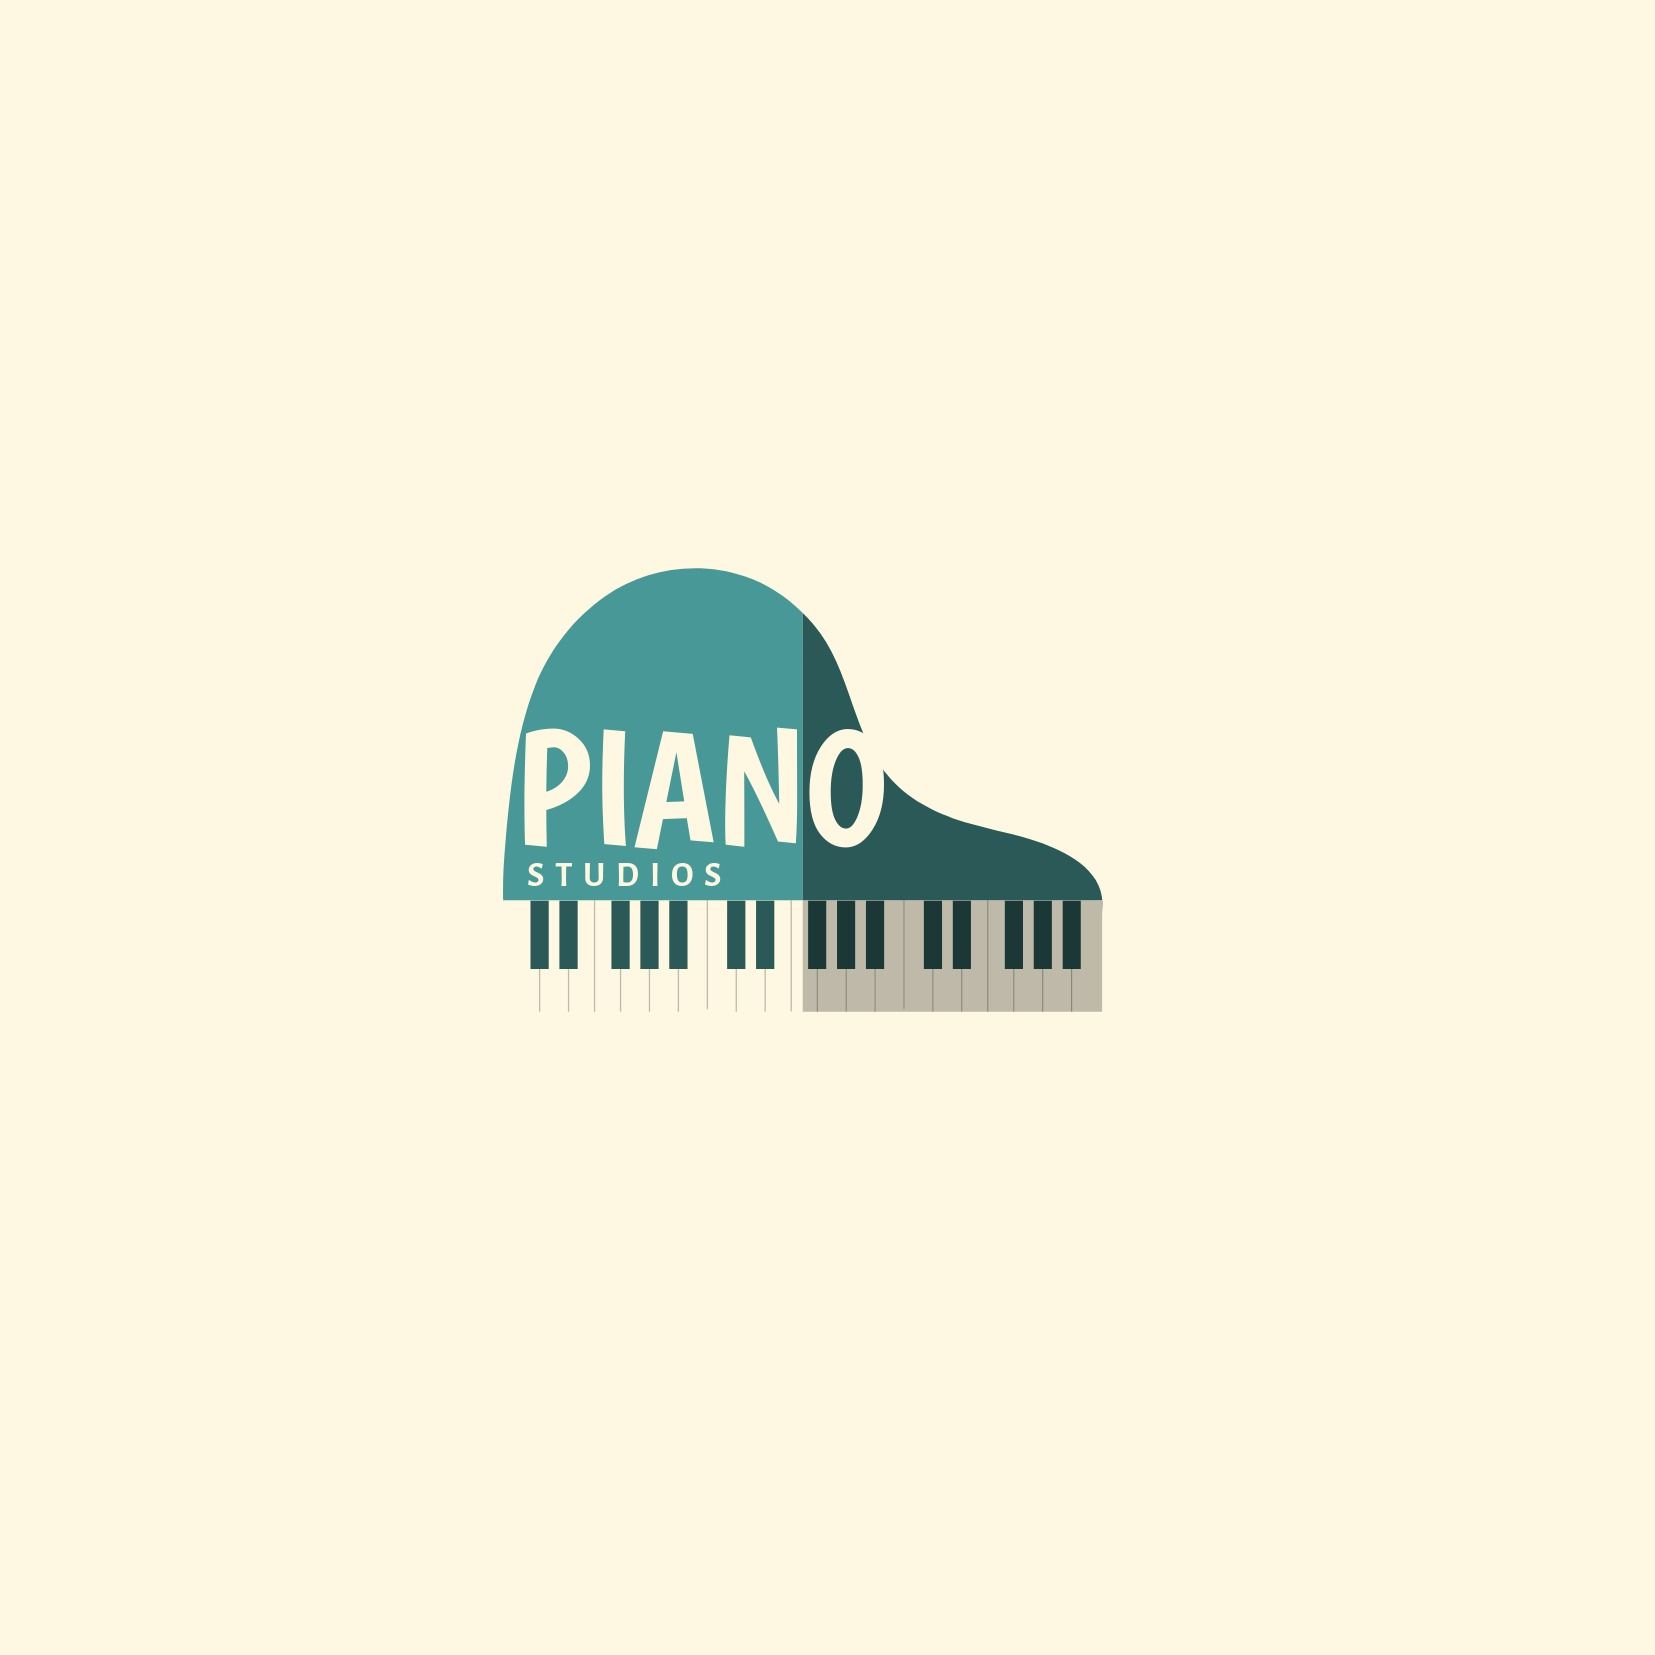 Piano-Studio-Logo mit türkisfarbenem Klavier auf hellem Hintergrund – Verwendung der Schriftart Boogaloo – Bild